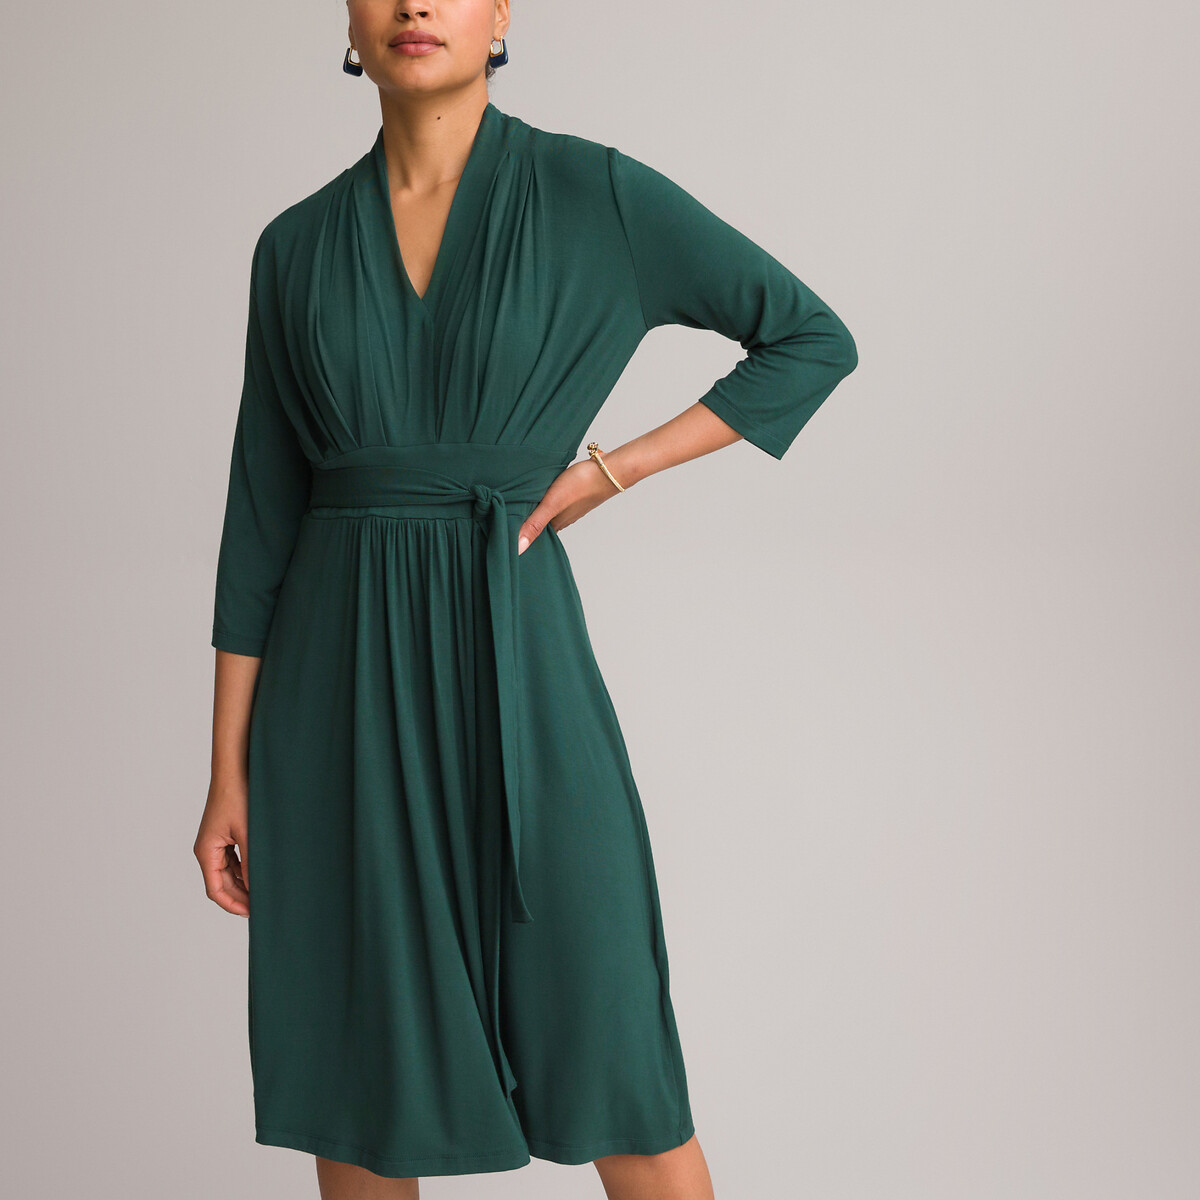 Платье ANNE WEYBURN Платье Расклешенное из струящегося трикотажа с рукавами 34 50 зеленый, размер 50 - фото 2